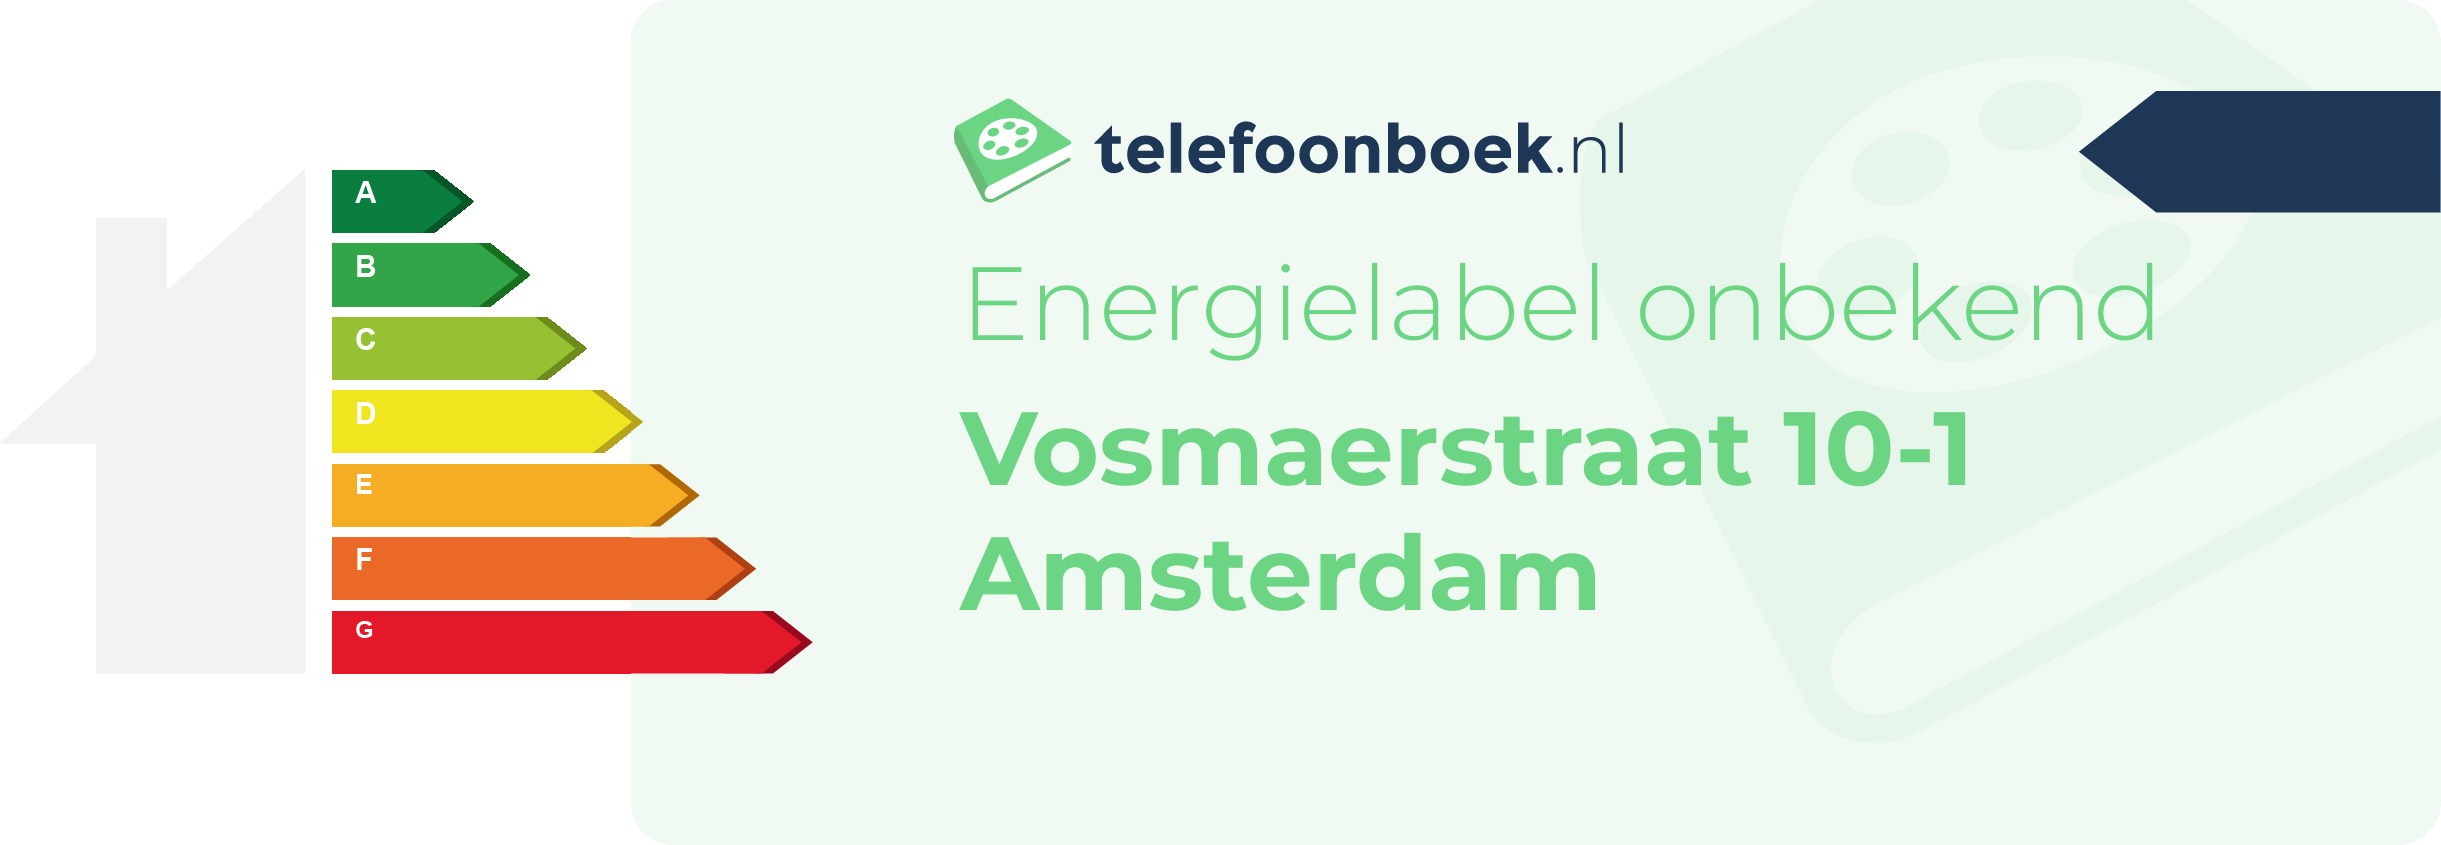 Energielabel Vosmaerstraat 10-1 Amsterdam